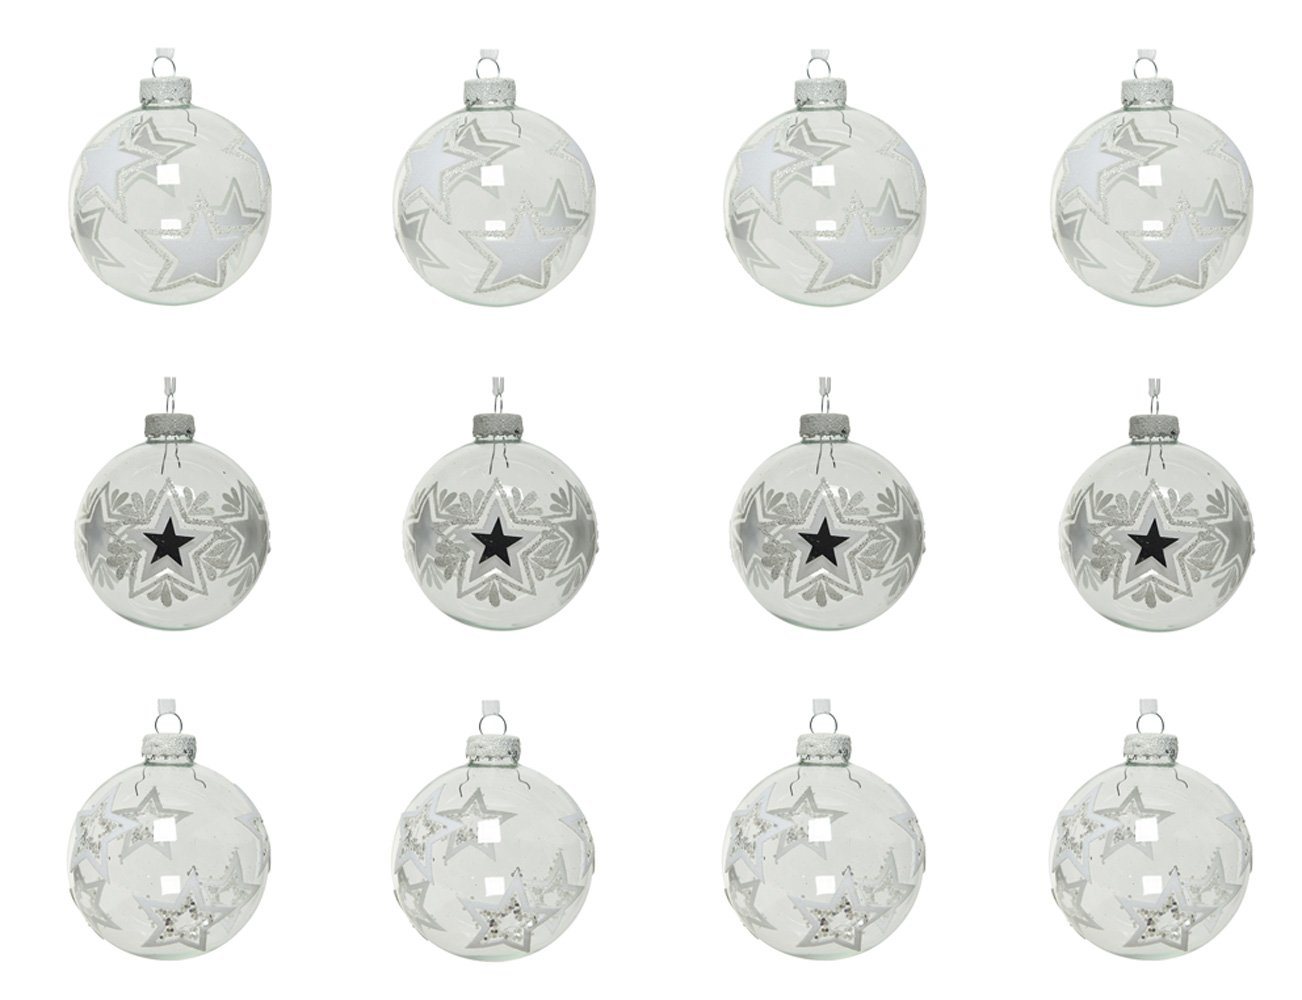 Decoris season decorations Weihnachtsbaumkugel, Weihnachtskugeln Glas Sterne Motiv 8cm klar transparent, 12er Set von Decoris season decorations